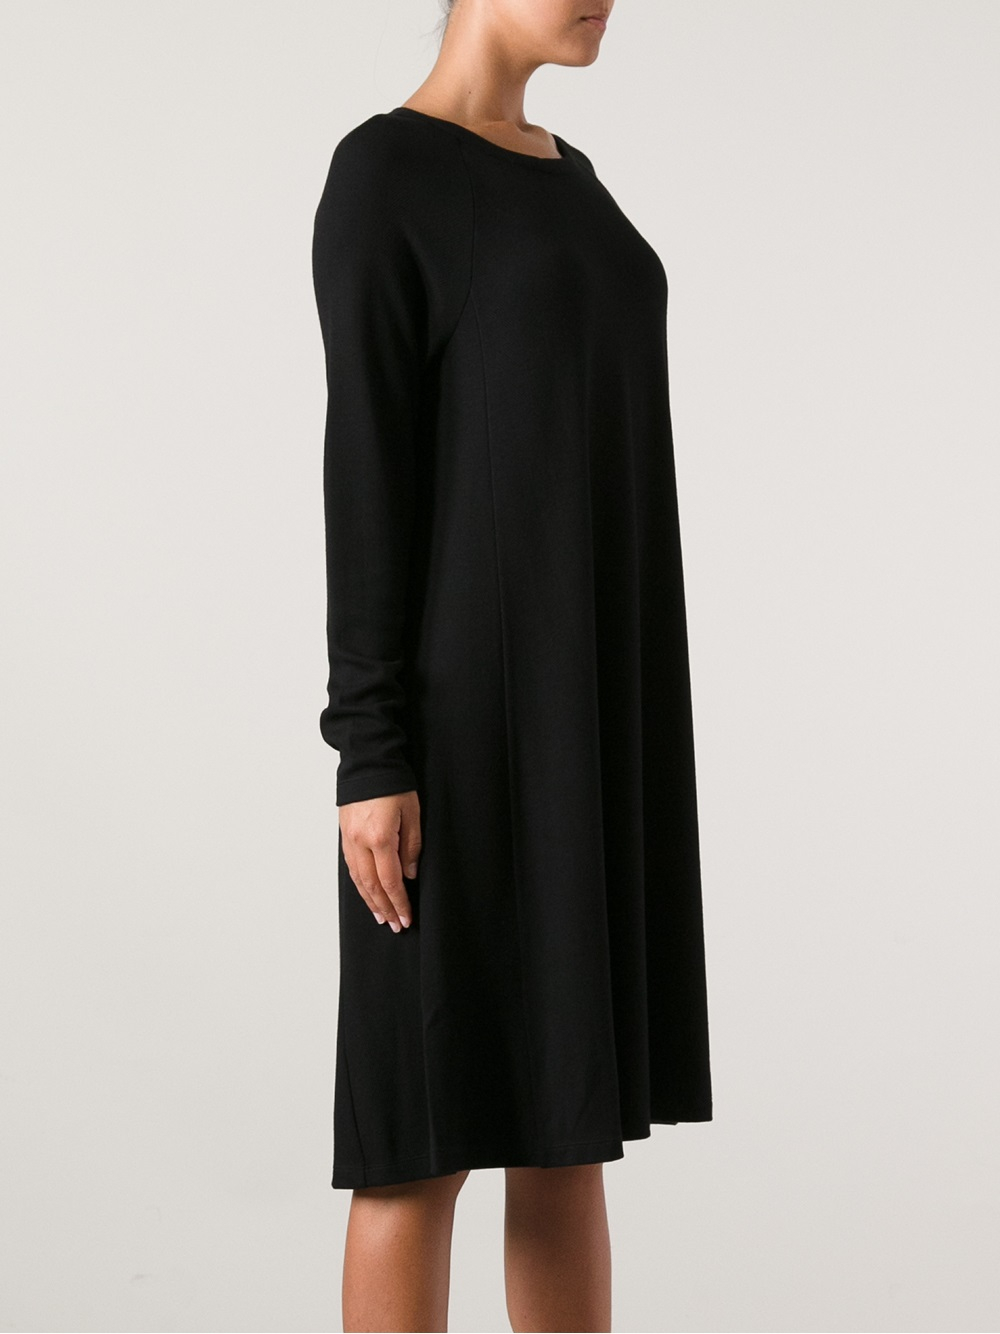 Mm6 by maison martin margiela Long Sleeve Dress in Black | Lyst